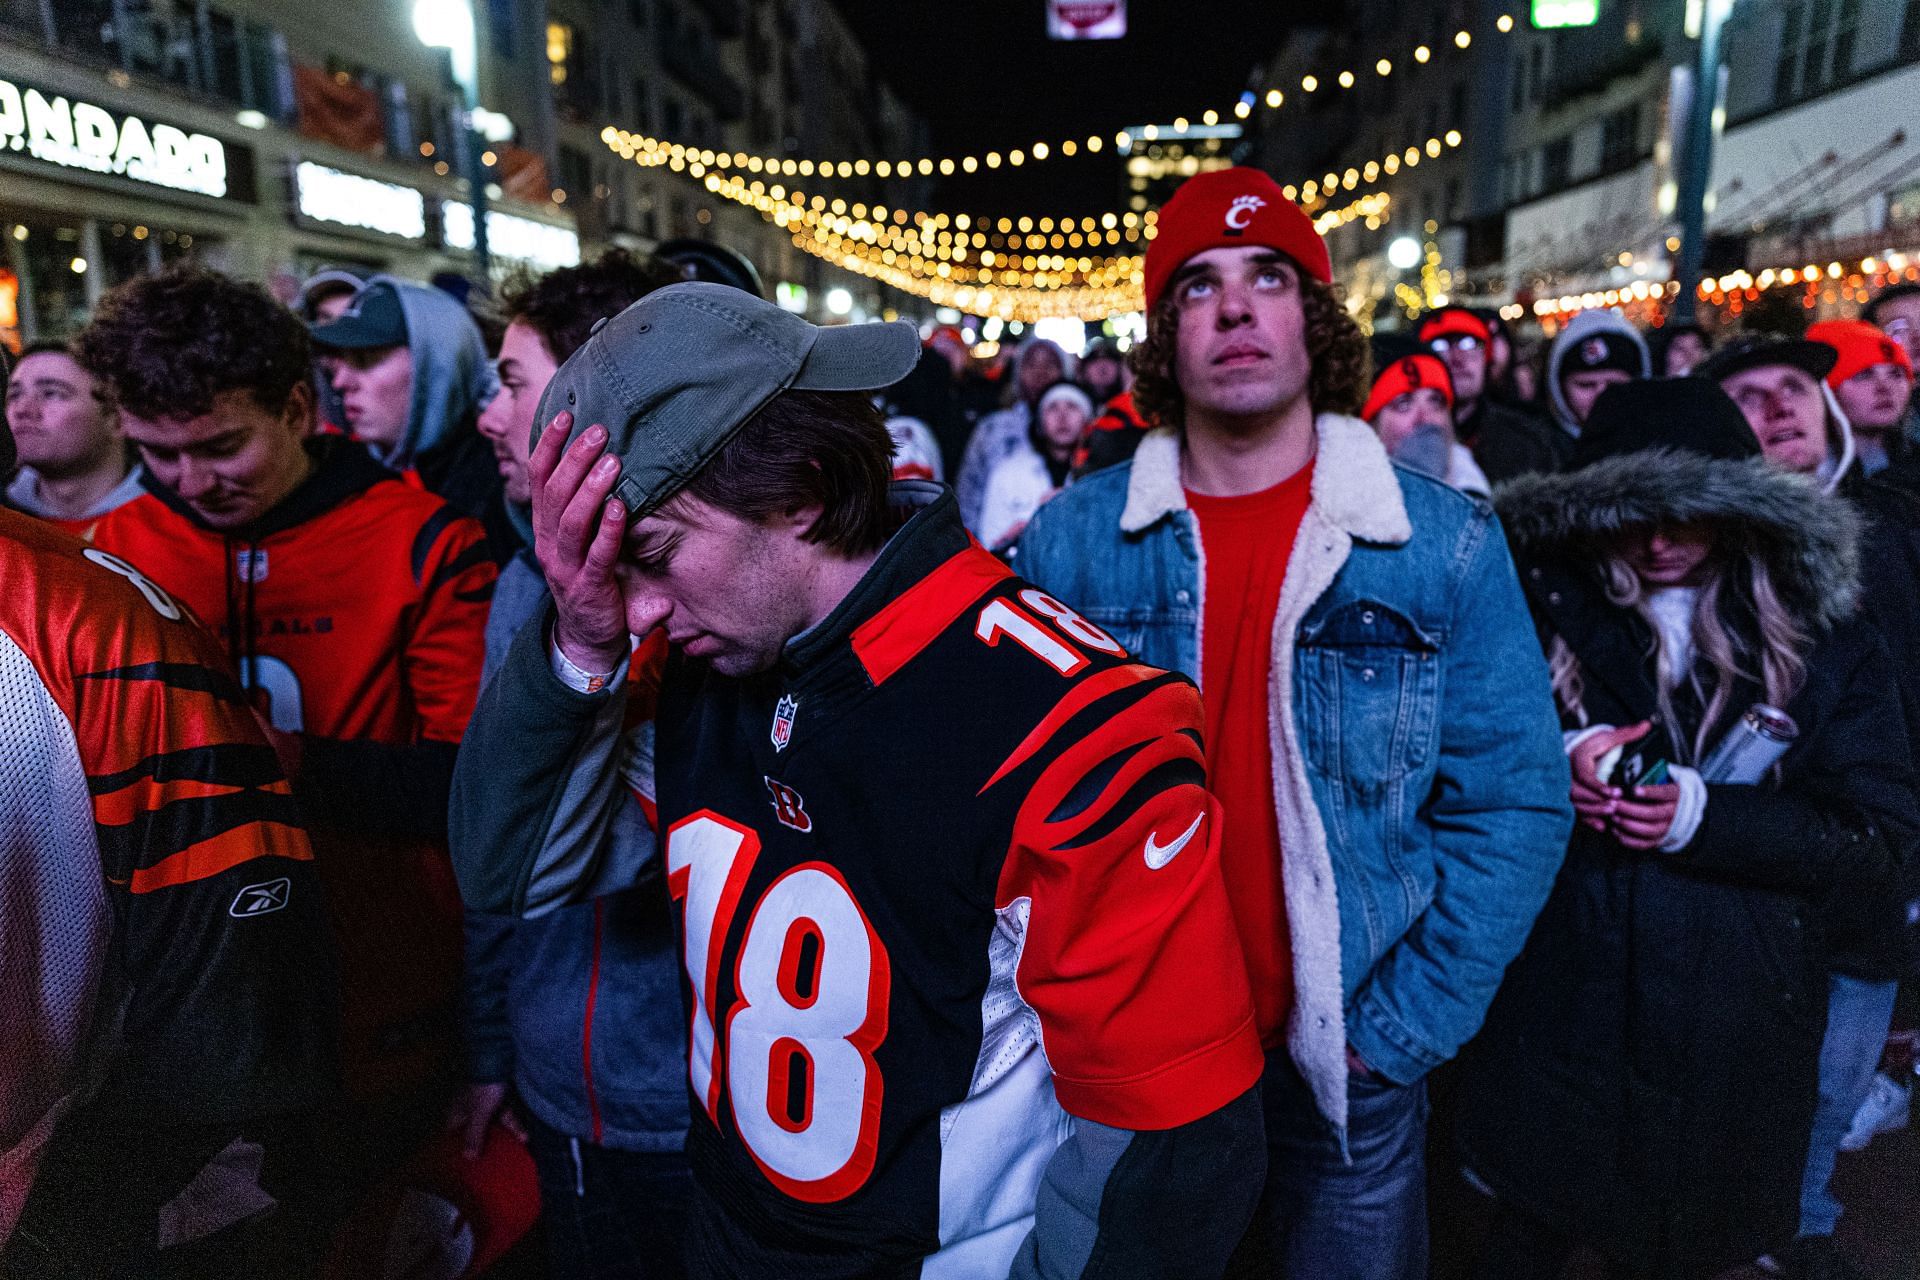 Cincinnati Bengals' Super Bowl championship gear finds a new home